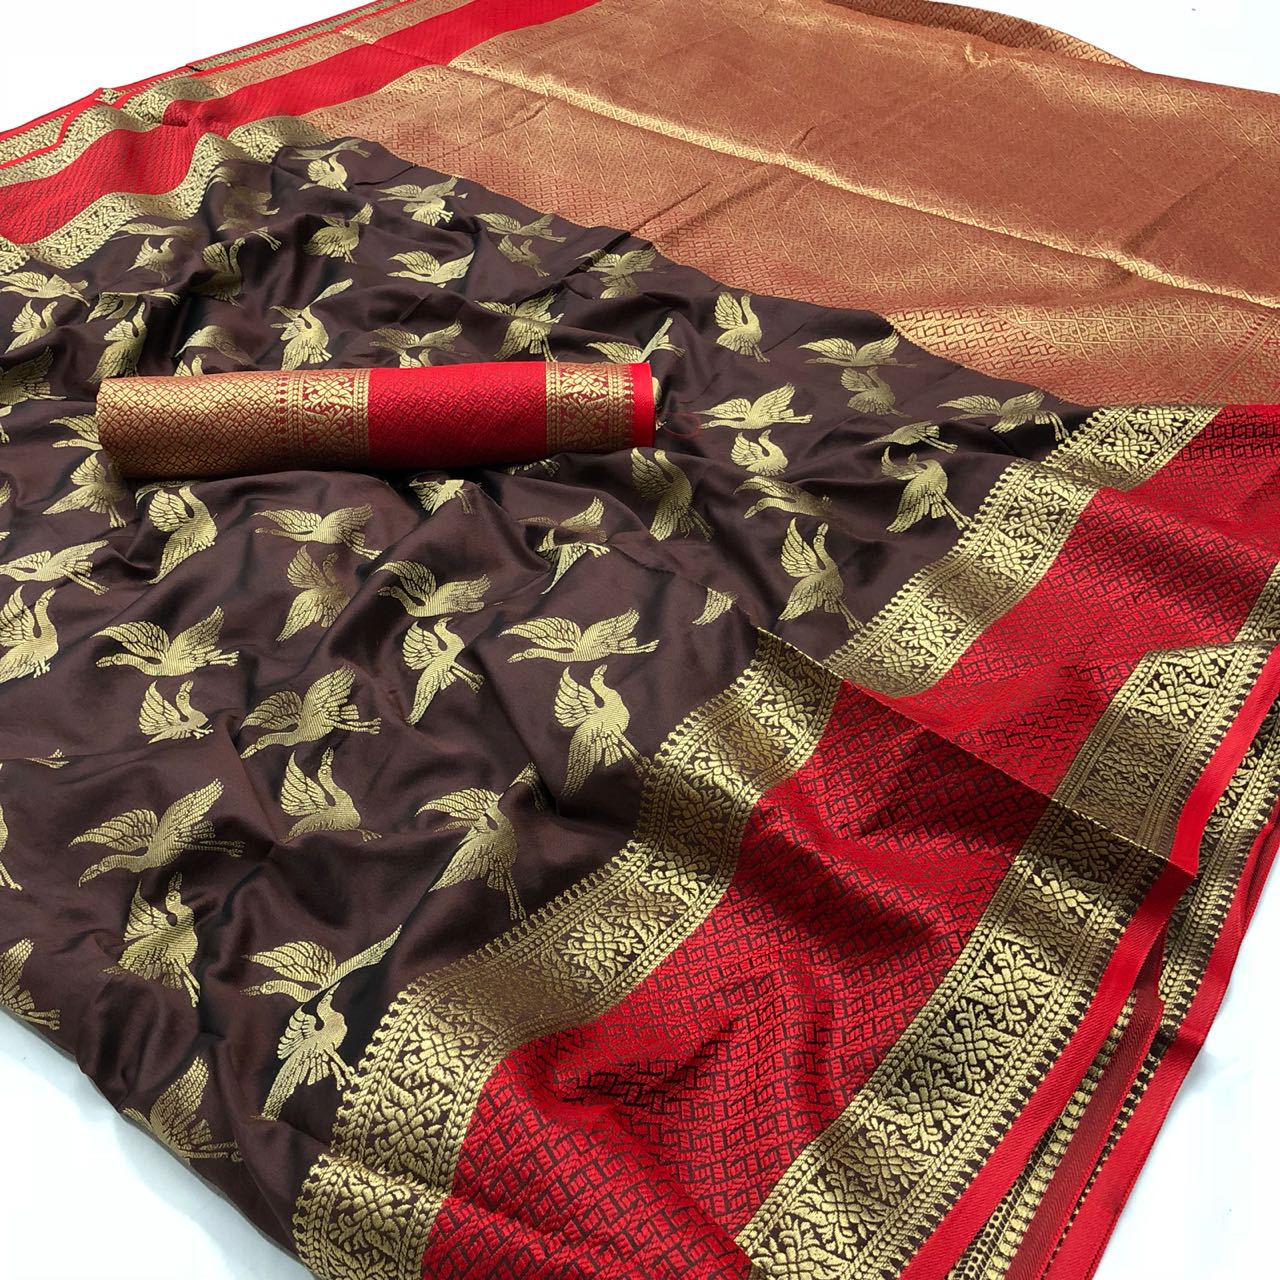 Srishti Textile in jaipur - manufacturer Bedsheet, Kurtis rajasthan